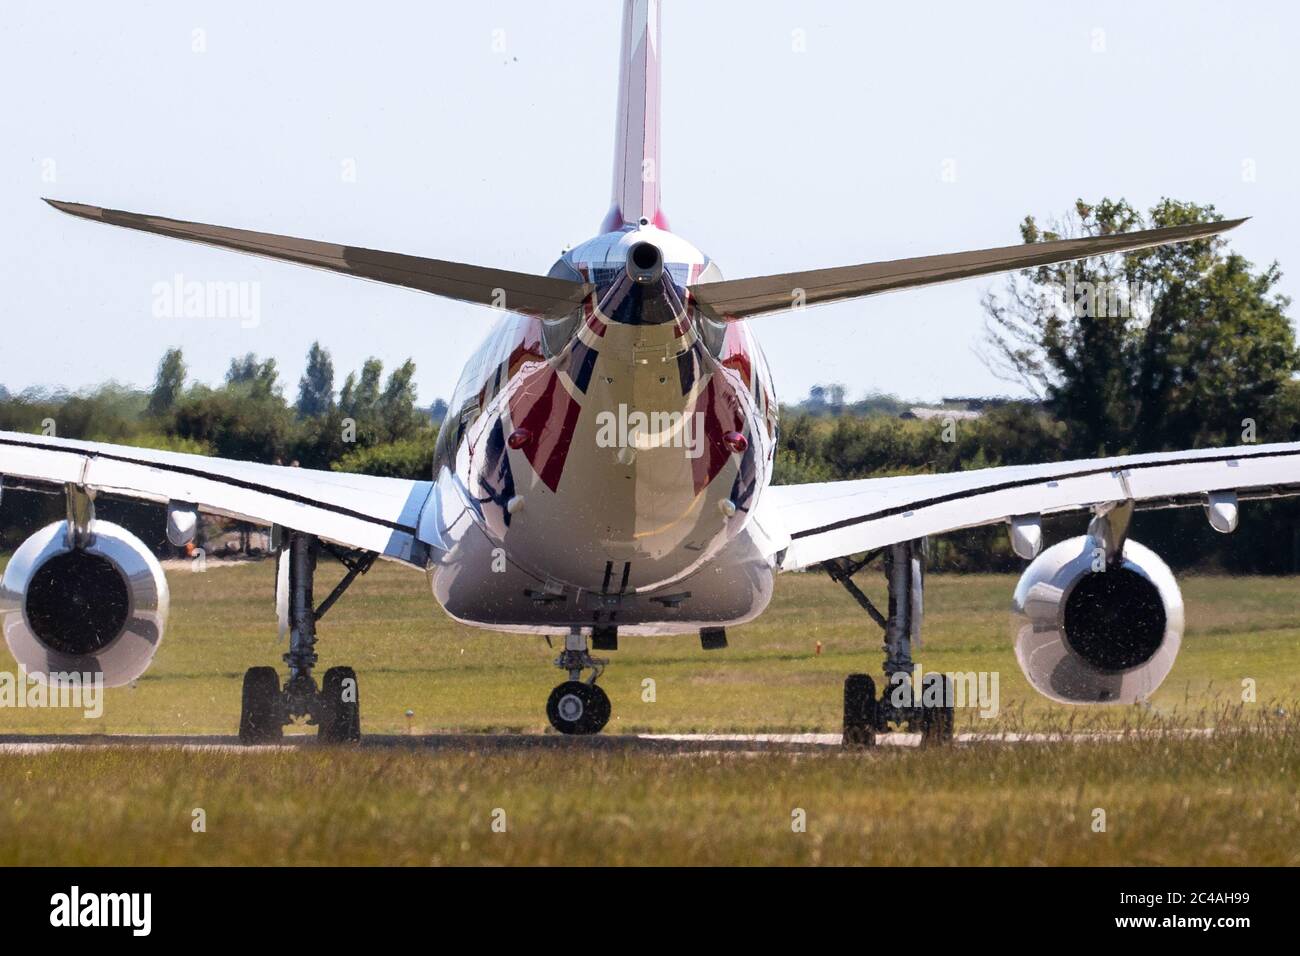 La photo du 25 juin montre l'Airbus Voyager RAF récemment repeint utilisé par Boris Johnson et la famille royale pour les affaires officielles quittant l'aéroport de Cambridge jeudi après-midi. Cet après-midi, on a vu le décollage de Cambridge (jeudi), l'avion nouvellement peint du Premier ministre, avec un nageoire à QUEUE GÉANT DE L'UNION. L'Airbus Voyager de la RAF, qui a subi une refonte de 900,000 £ chez Marshall Aerospace, a été repéré en vol de retour à sa base de la RAF Brize Norton dans l'Oxfordshire. L'avion, qui était autrefois gris, a été refait, avec un nouveau corps blanc et un énorme rouge, blanc et bleu Banque D'Images